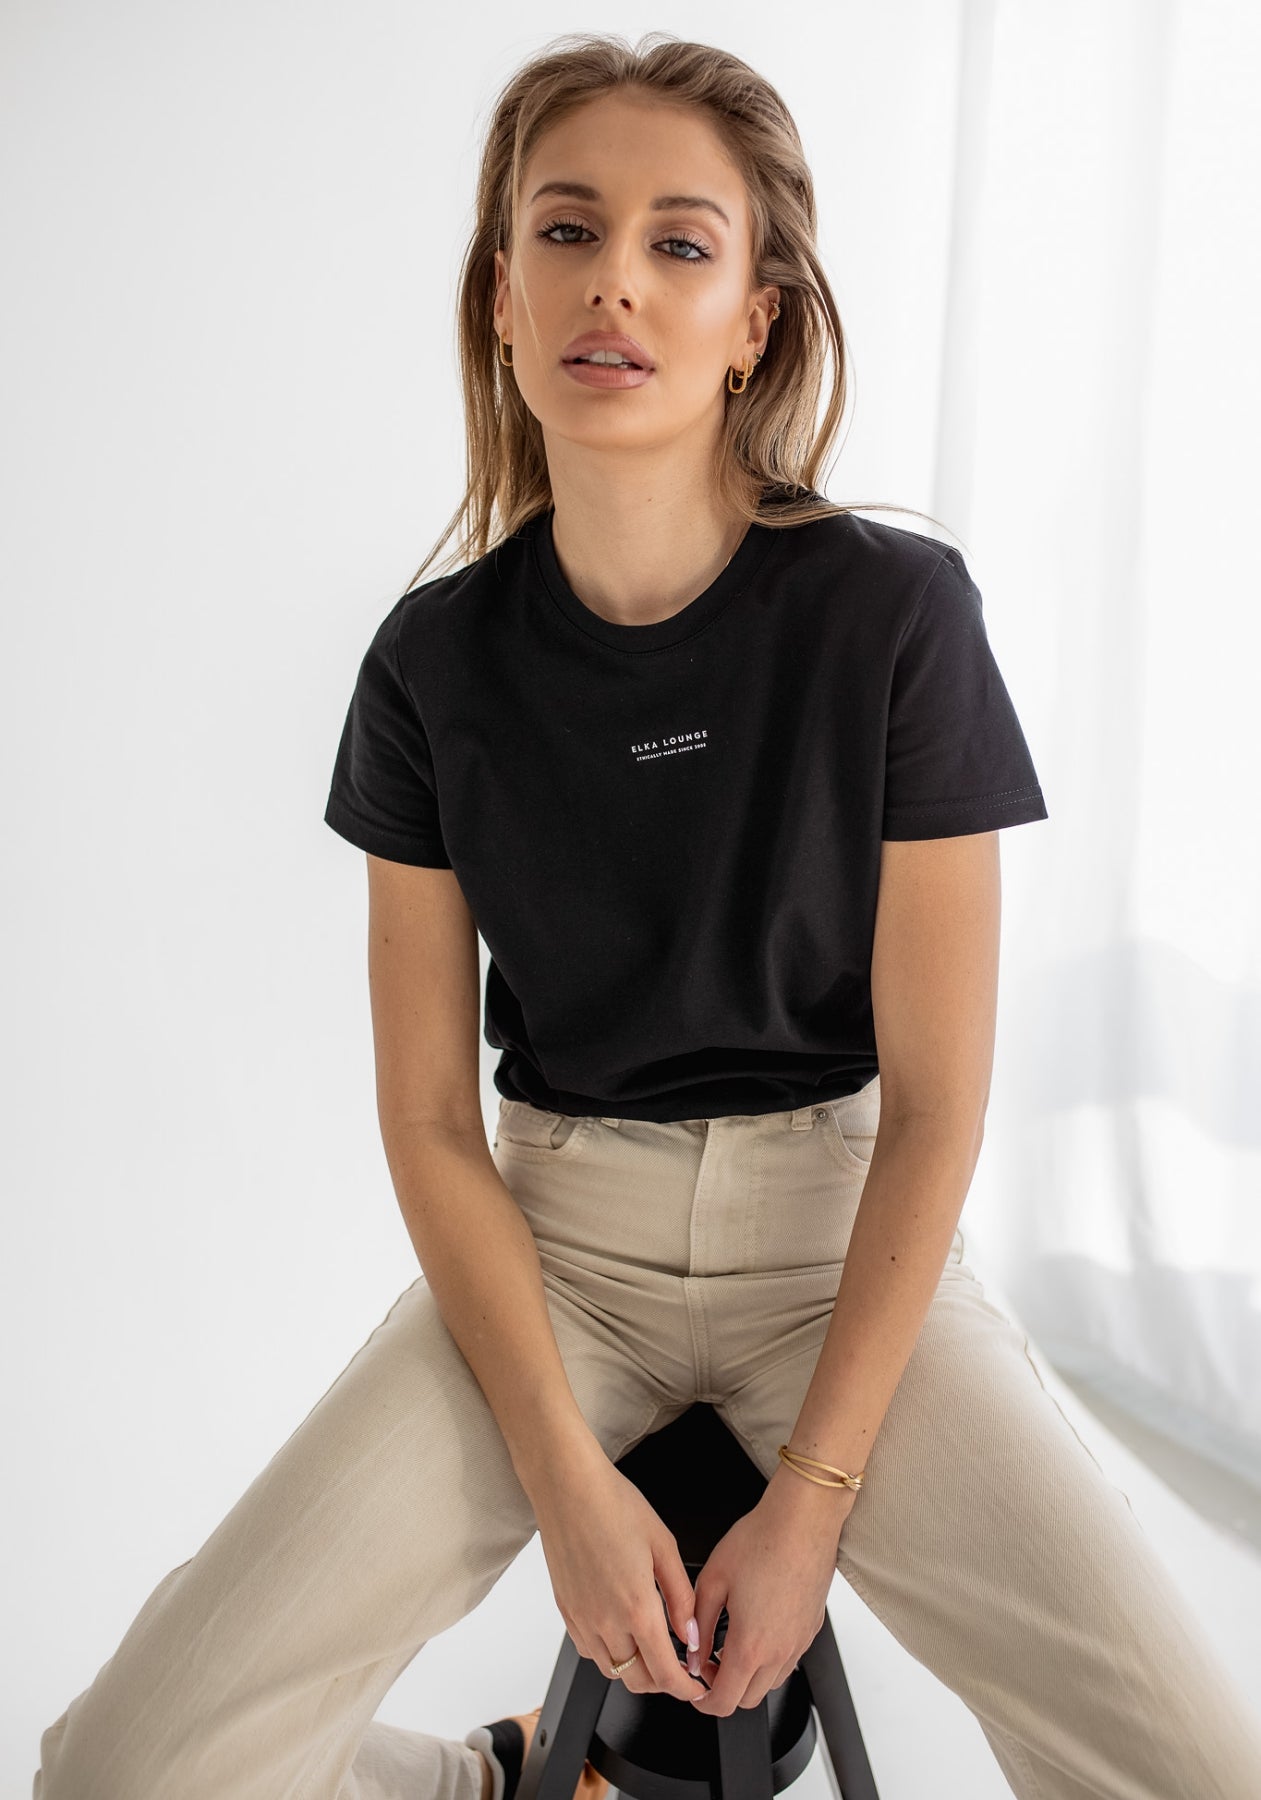 Women koszulka z bawełny organicznej Black - ethically made Minimalist - regular